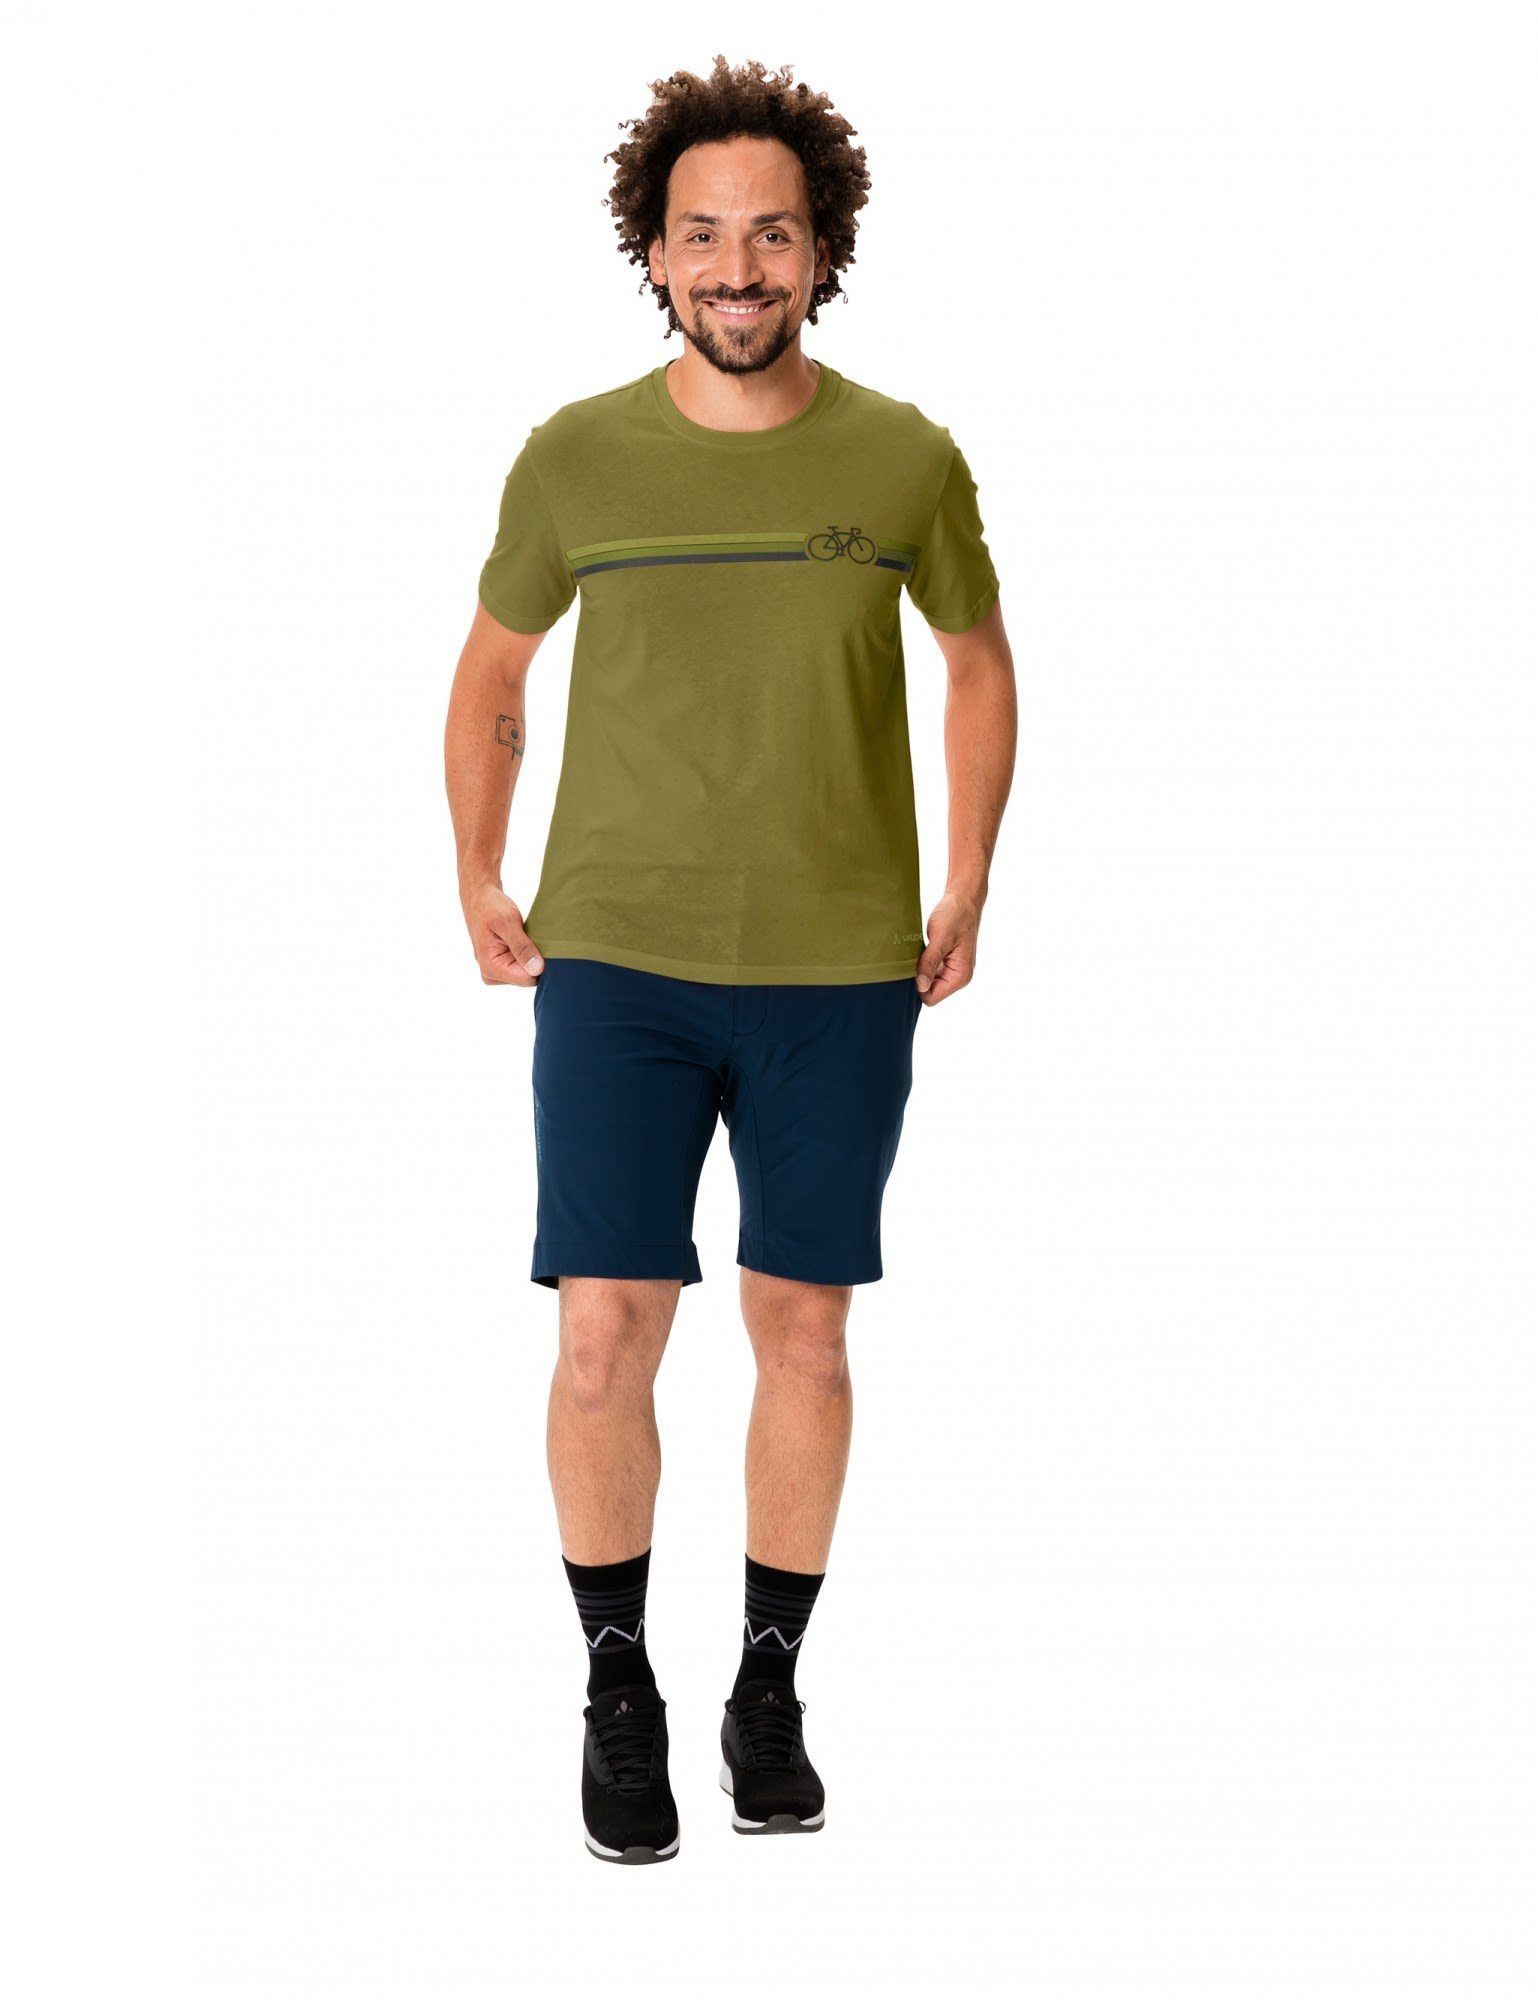 T-Shirt Vaude Cyclist VAUDE Bamboo Mens V Herren Kurzarm-Shirt T-shirt